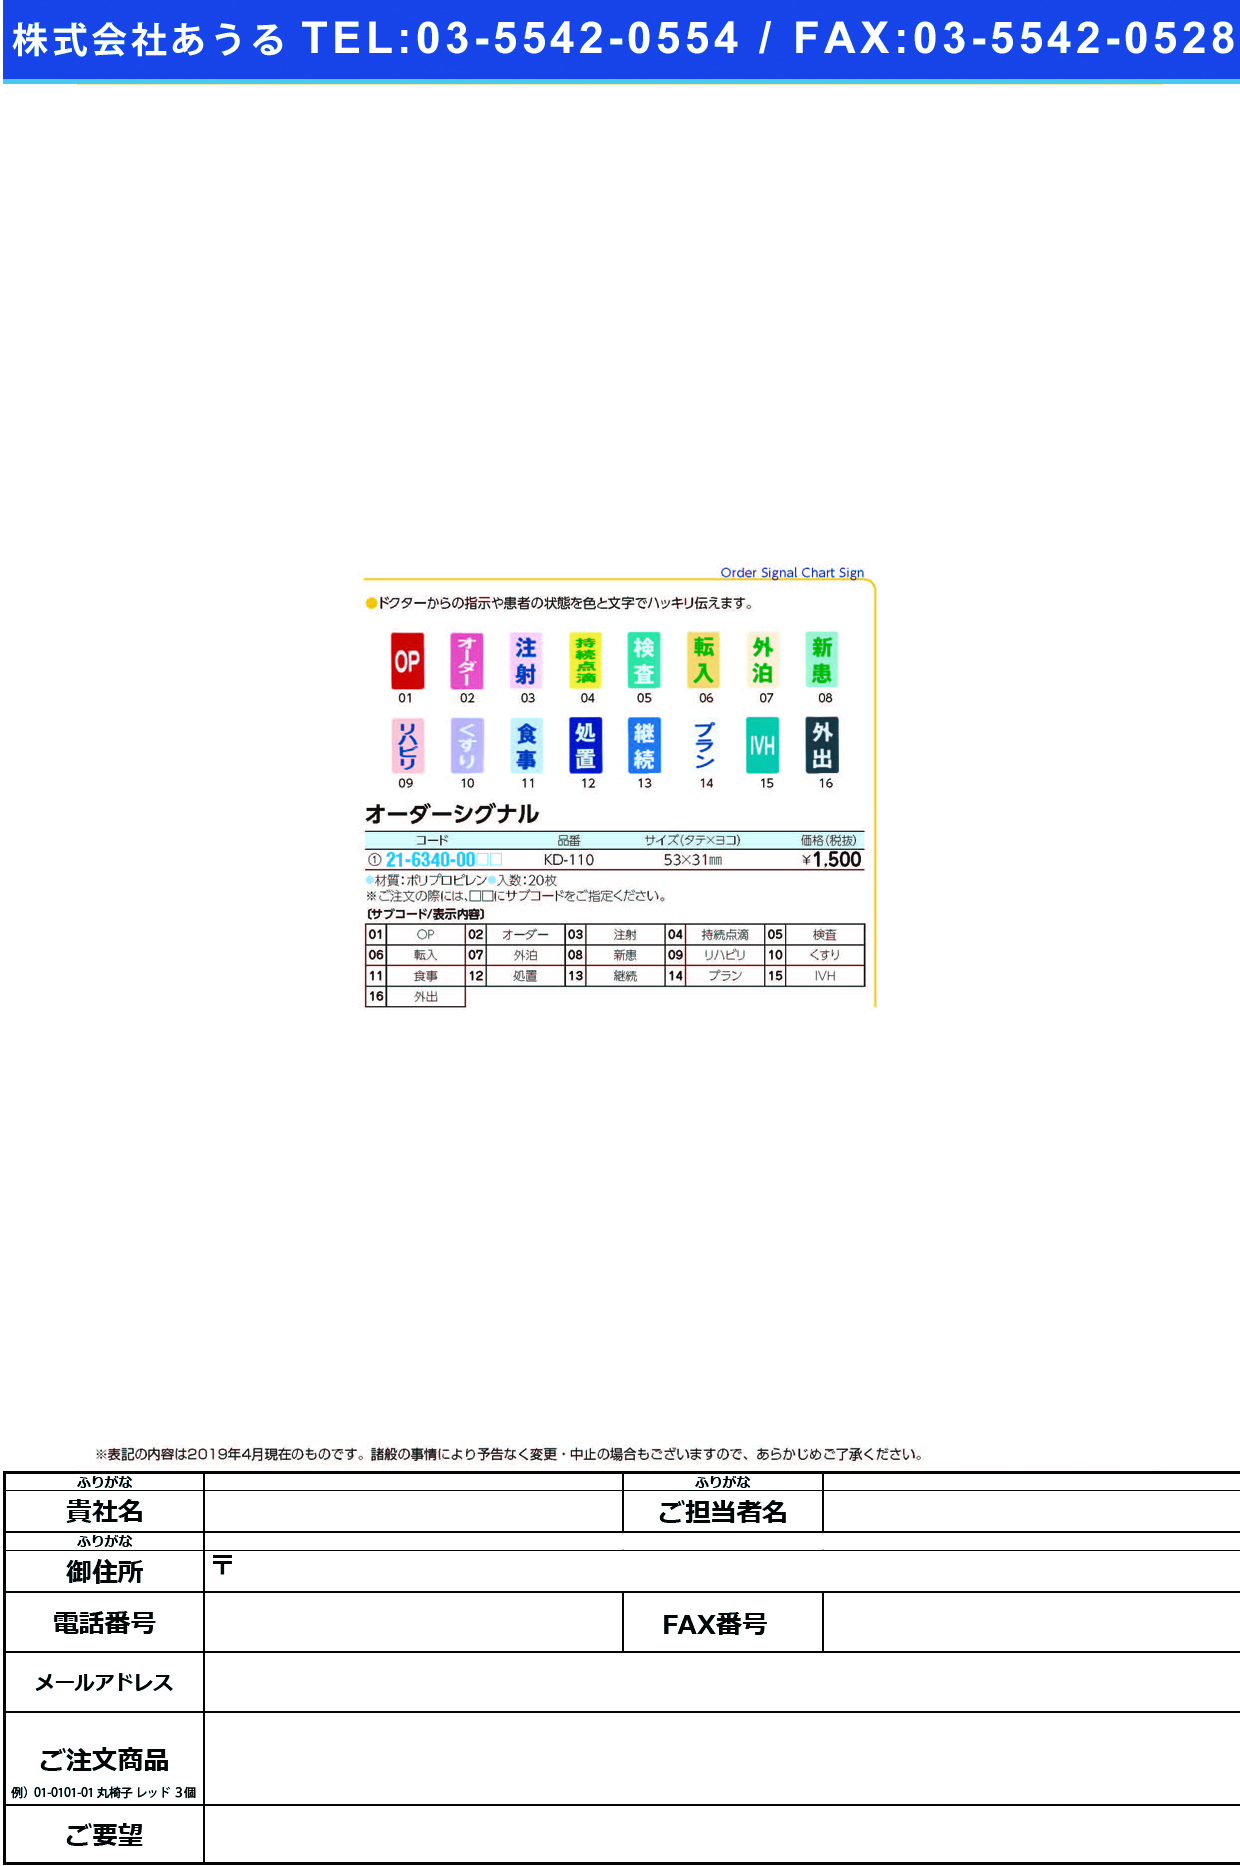 (21-6340-00)オーダーシグナル KD-110(20ﾏｲｲﾘ) ｵｰﾀﾞｰｼｸﾞﾅﾙ 外泊(ケルン)【1袋単位】【2019年カタログ商品】